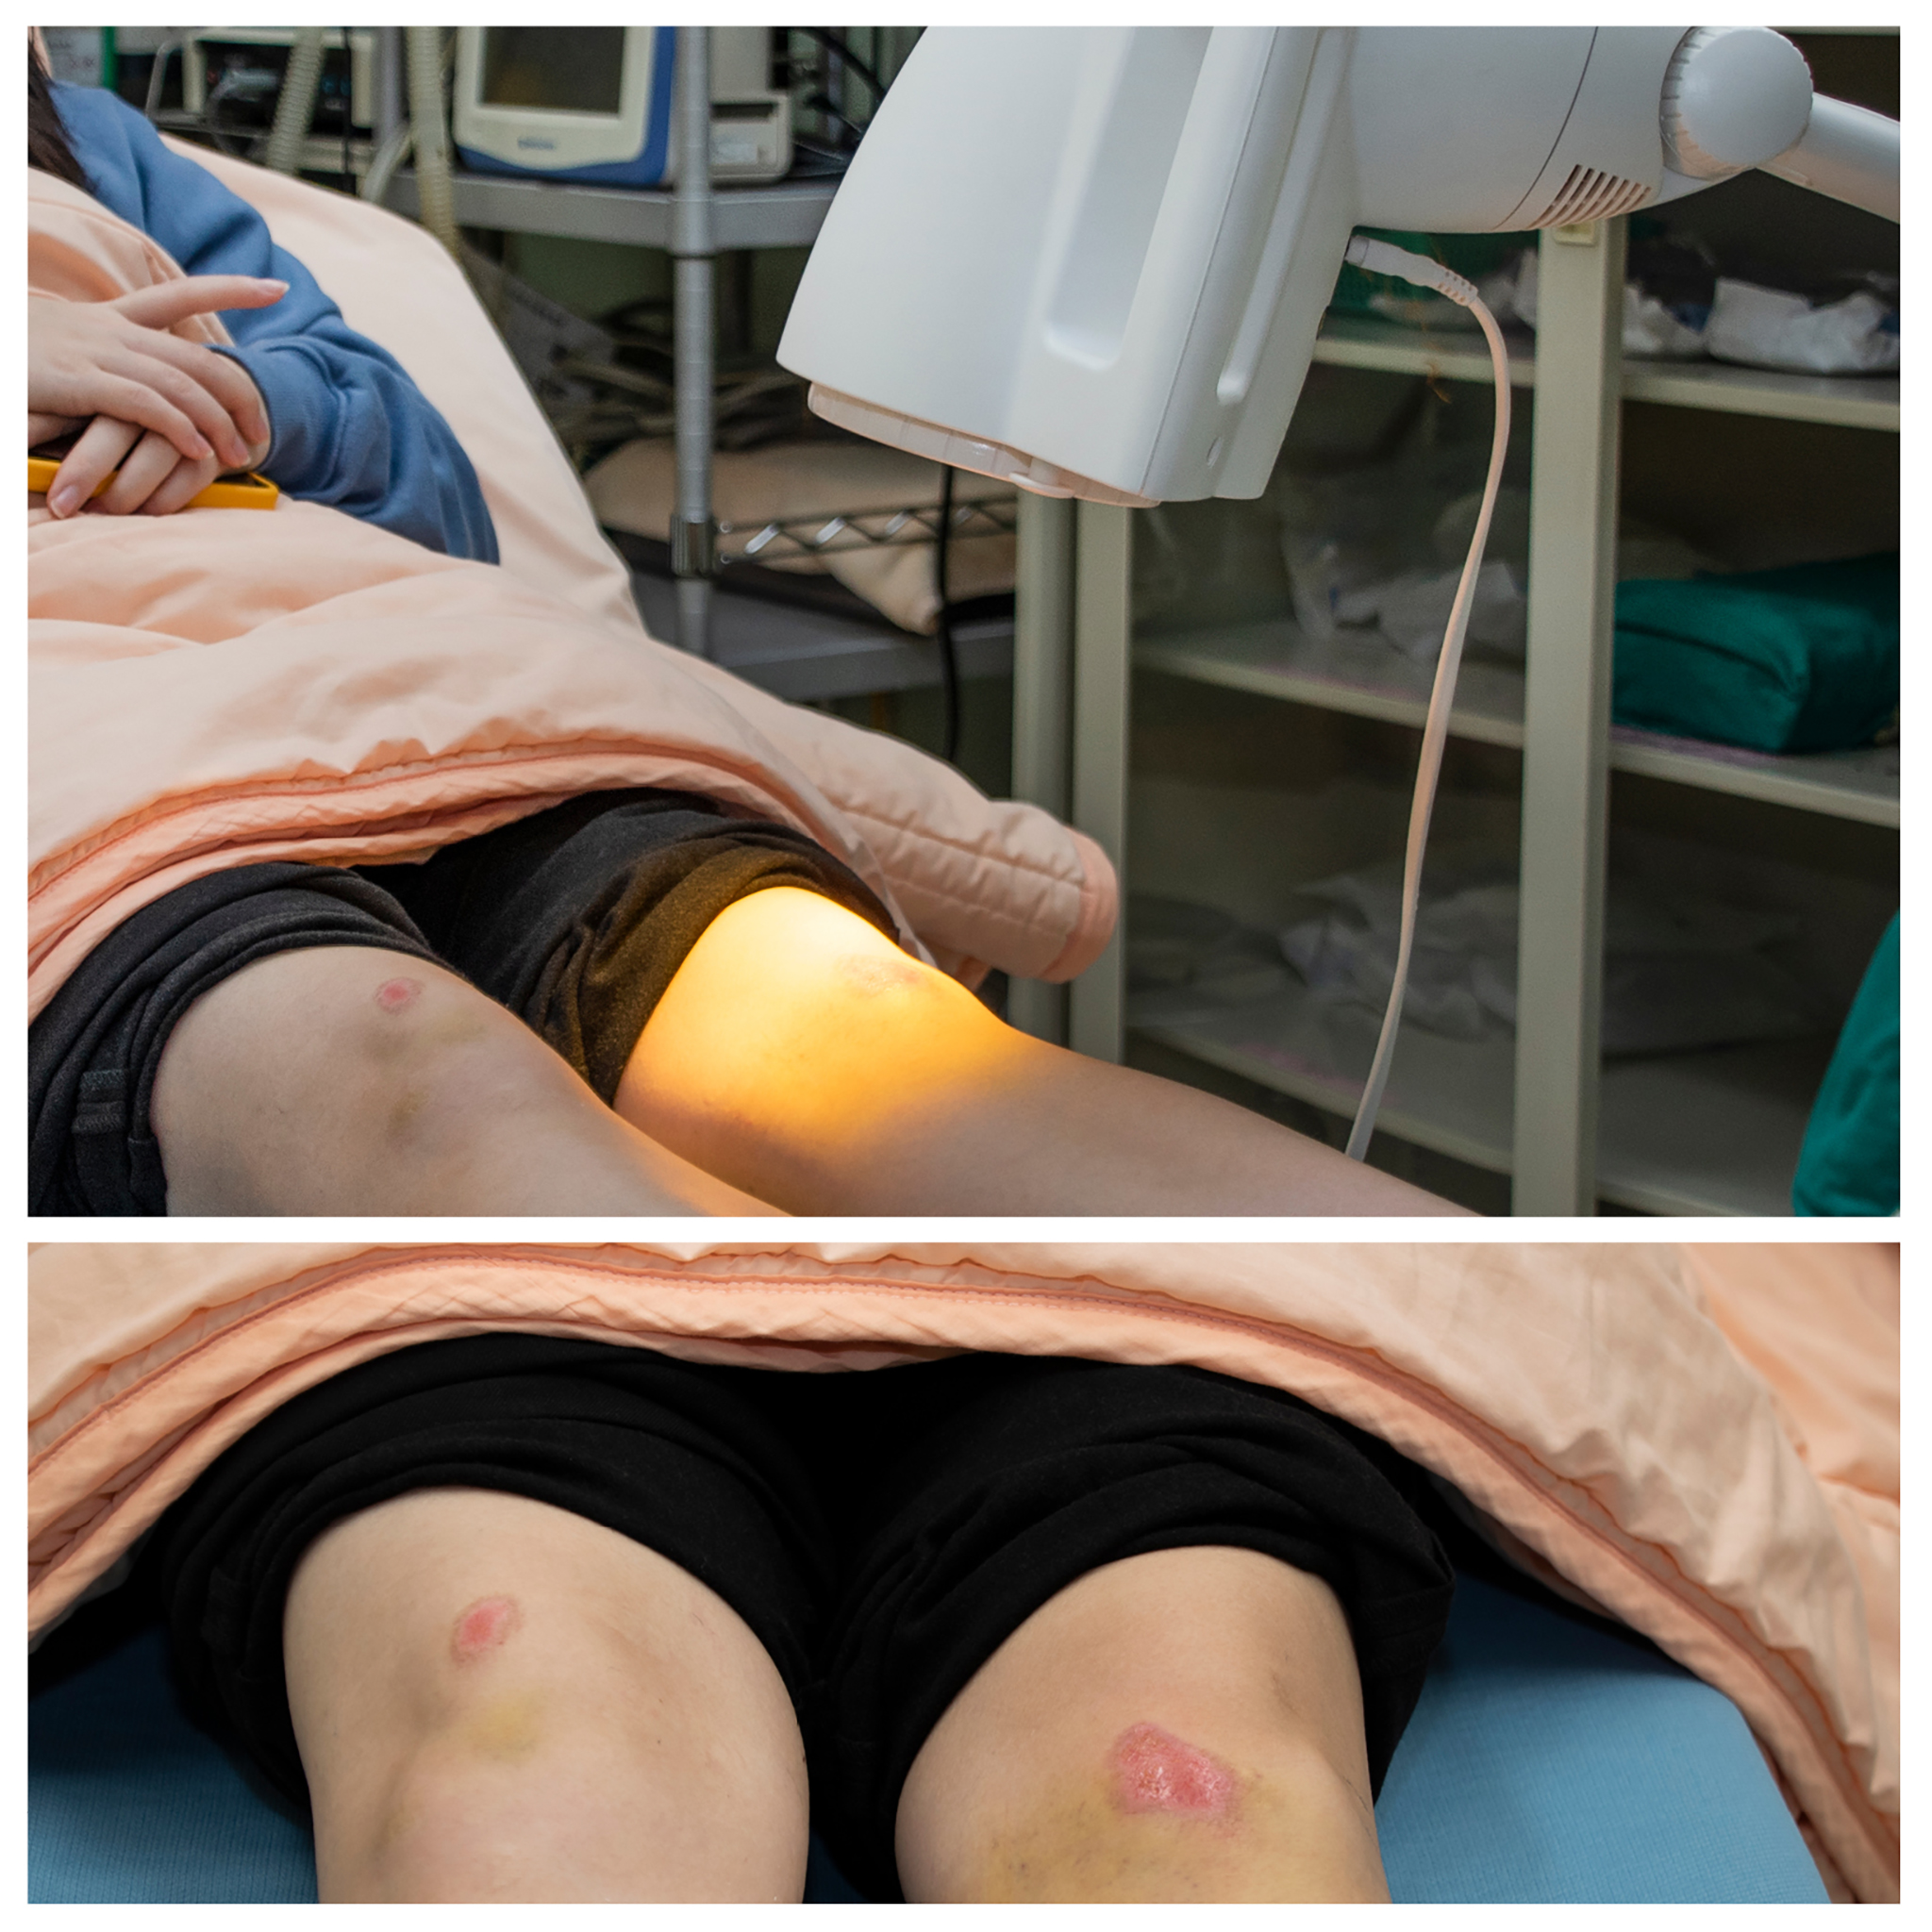 患者接受光療修護傷口，圖中左側傷口為先前接受過光療的傷口，癒合情況良好。